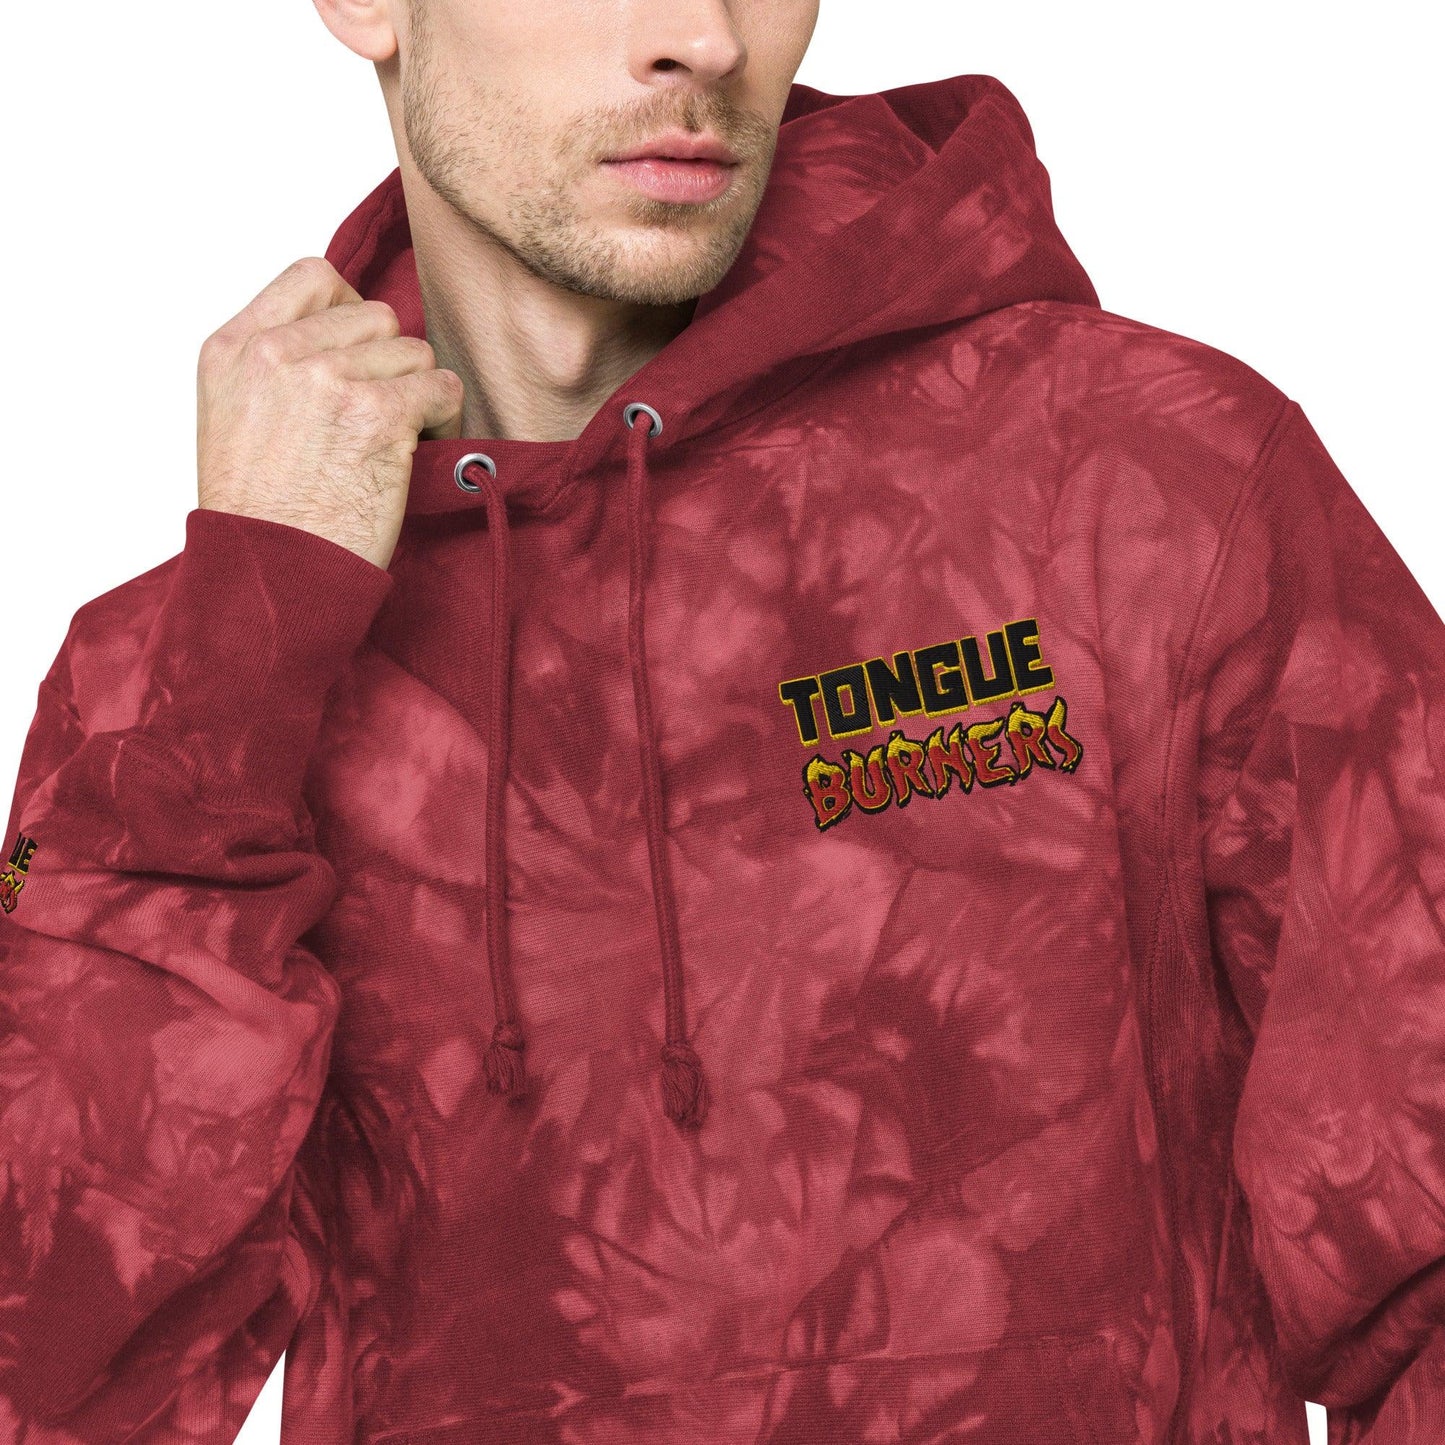 Tongue Burners Champion tie-dye hoodie